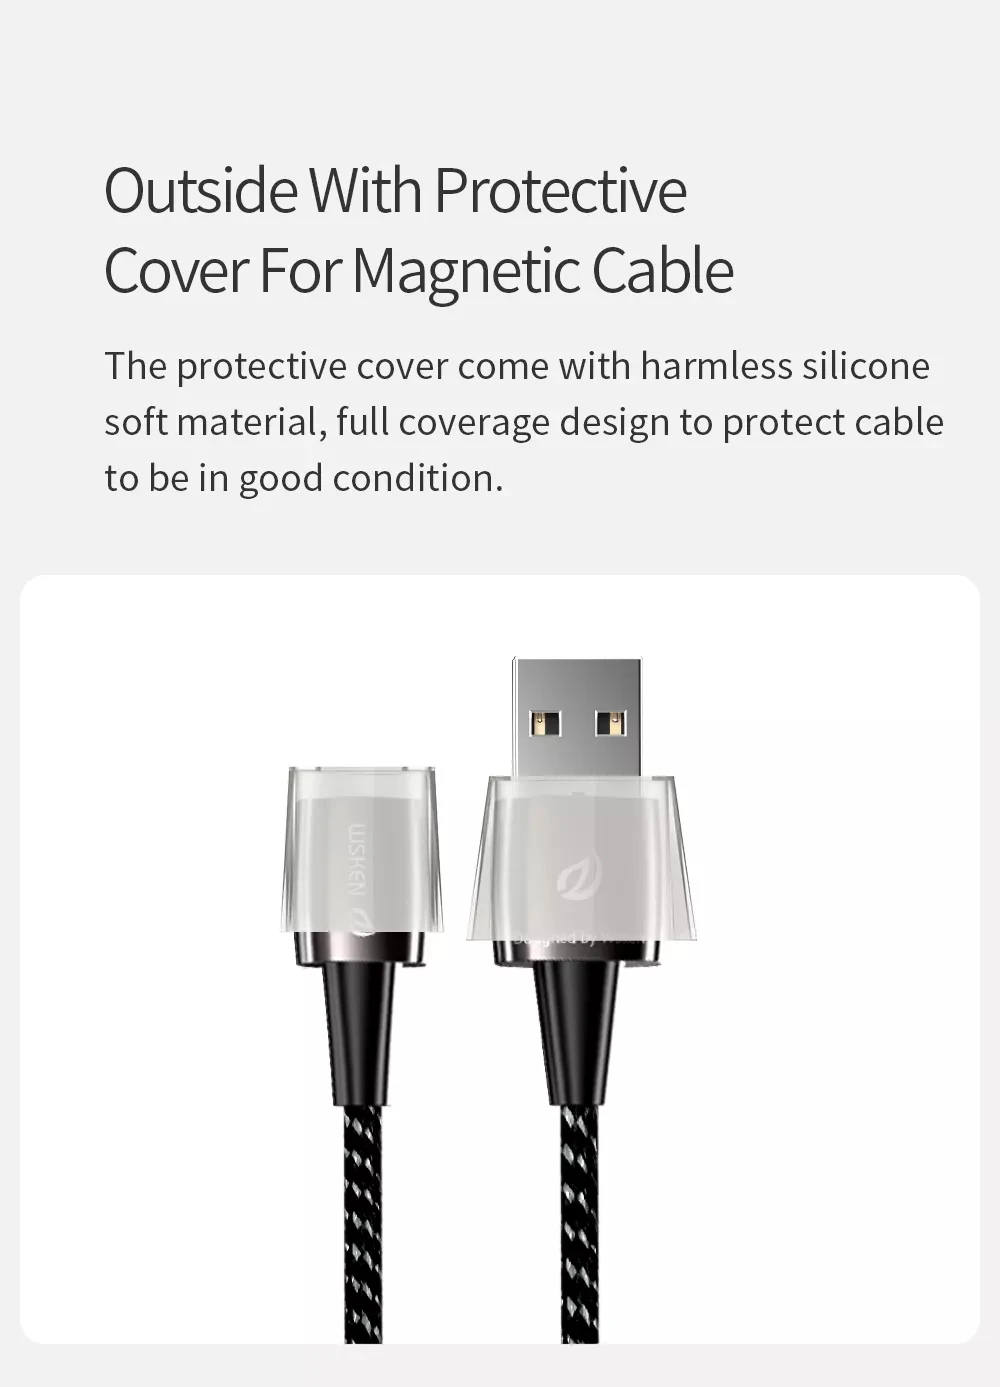 Магнитный кабель Xiaomi WSKEN 3A type C Micro USB для быстрой зарядки данных 1,2 m/2 m кабель для Xiaomi samsung huawei USB кабель